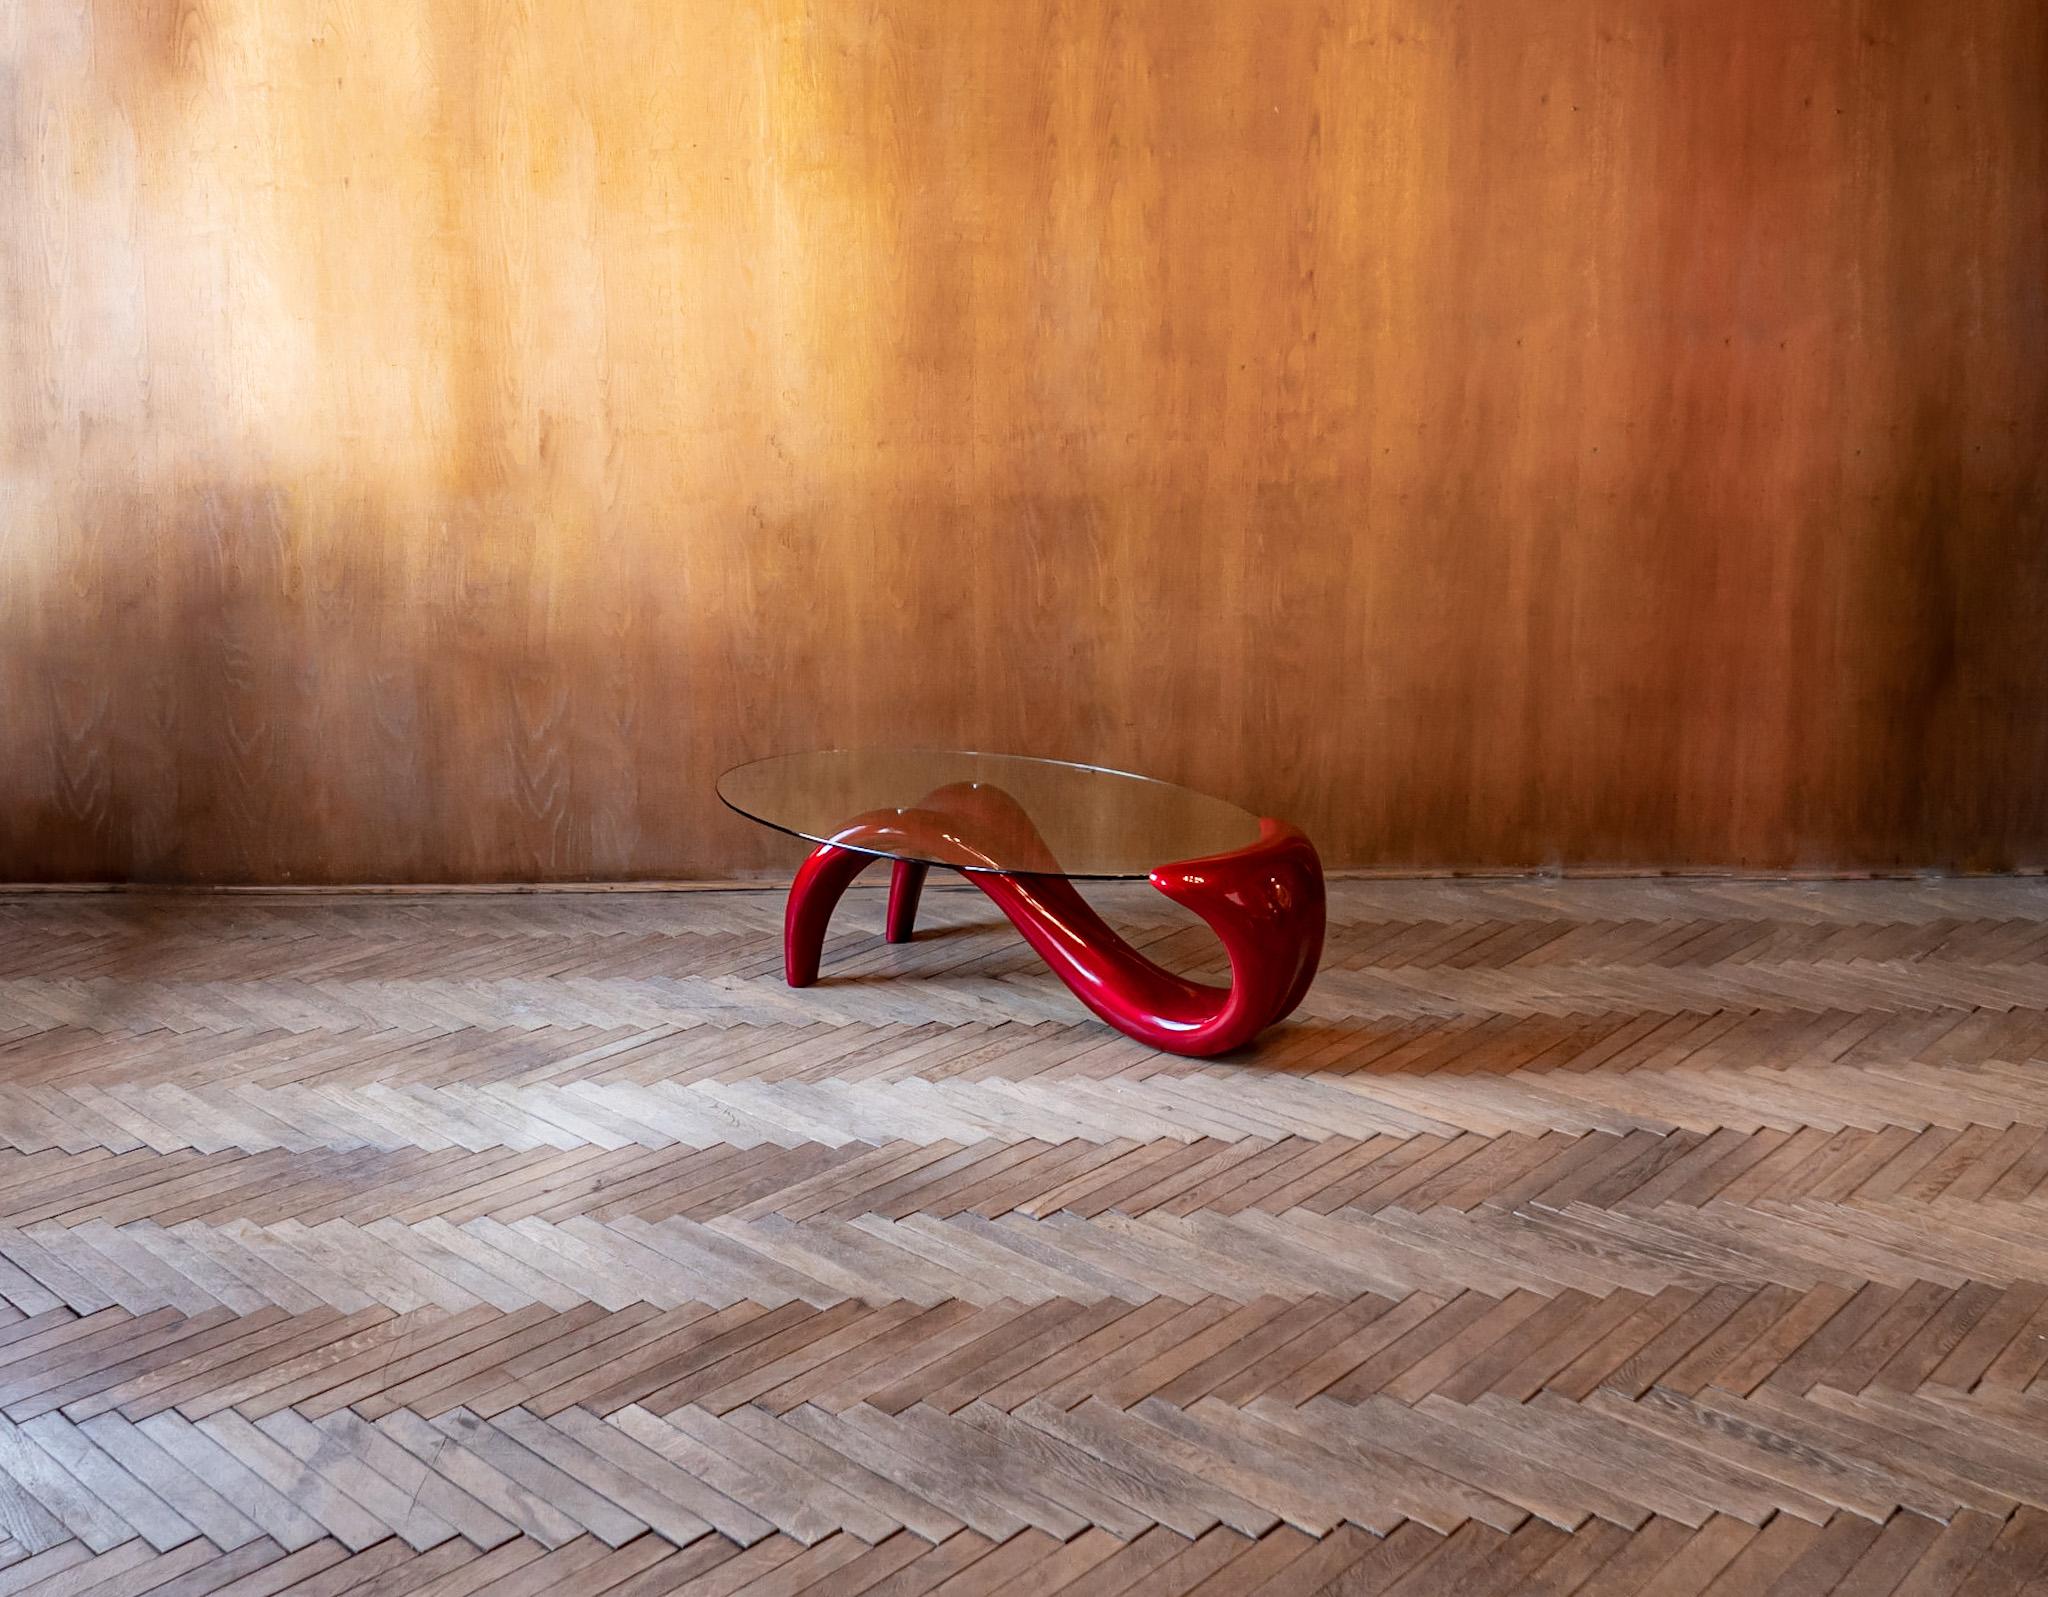 Table basse post-moderne rouge laqué brillant avec plateau en verre, Italie 1980.

Superbe table basse post-moderne rouge laqué brillant avec une base en forme de corps de femme et un plateau en verre. Cette table unique attire le regard grâce à